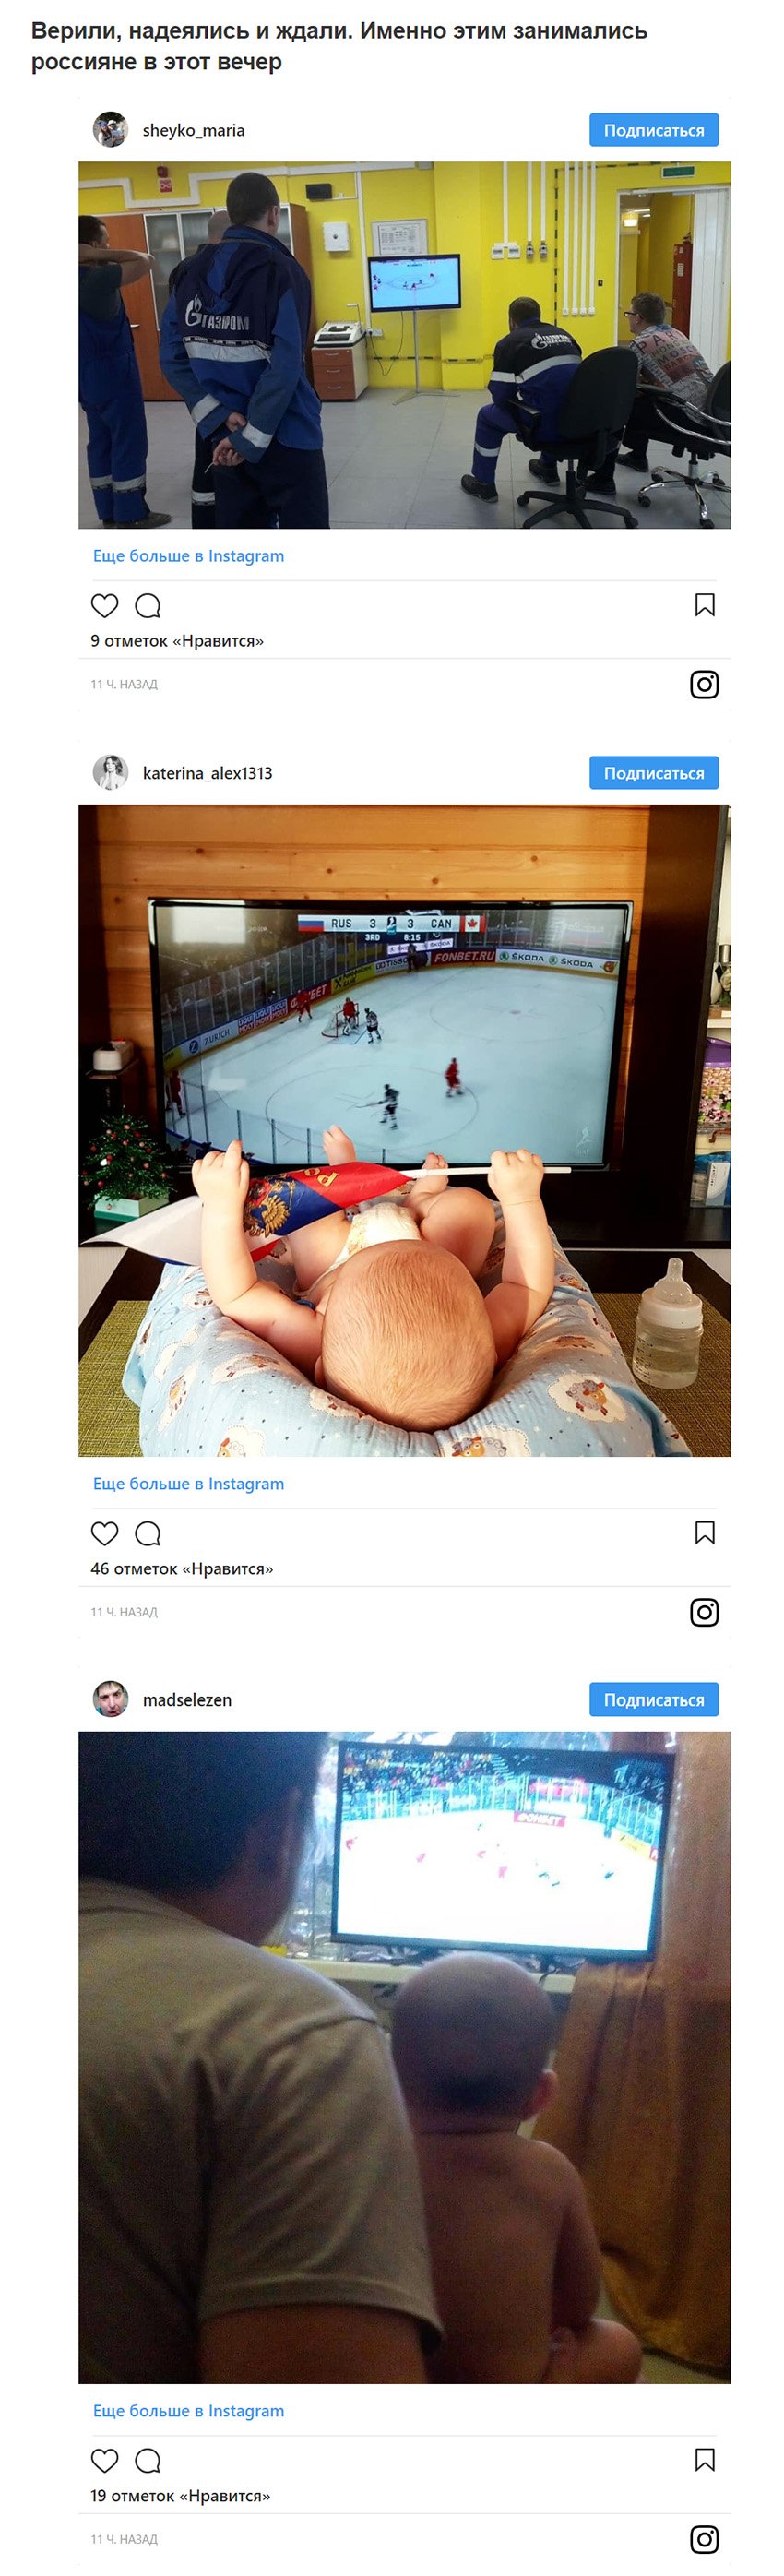 Проиграли, но достойно: реакция соцсетей на вылет сборной России по хоккею с ЧМ-2018